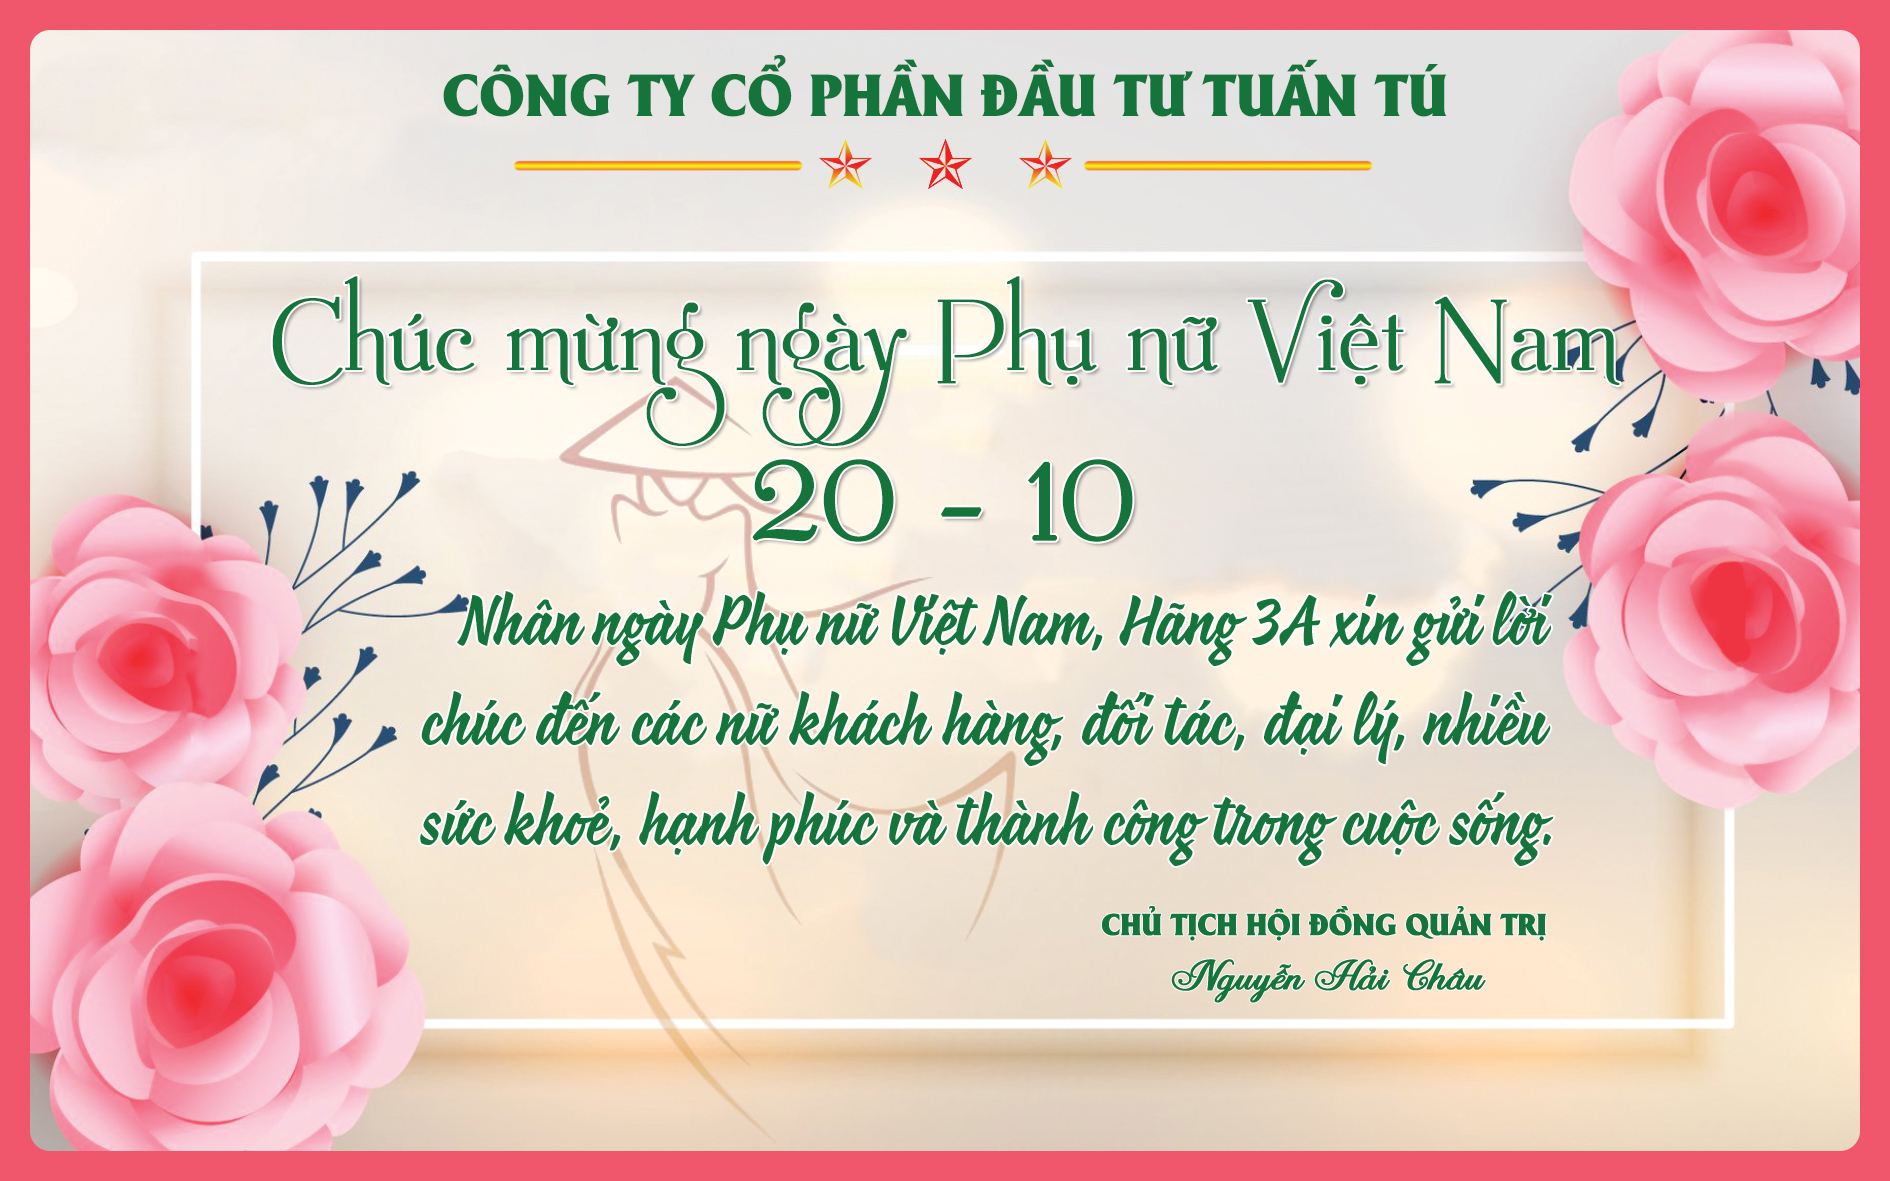 Chúc mừng ngày phụ nữ Việt Nam - Kho máy || Máy nông nghiệp || Máy chăn  nuôi || Máy môi trường